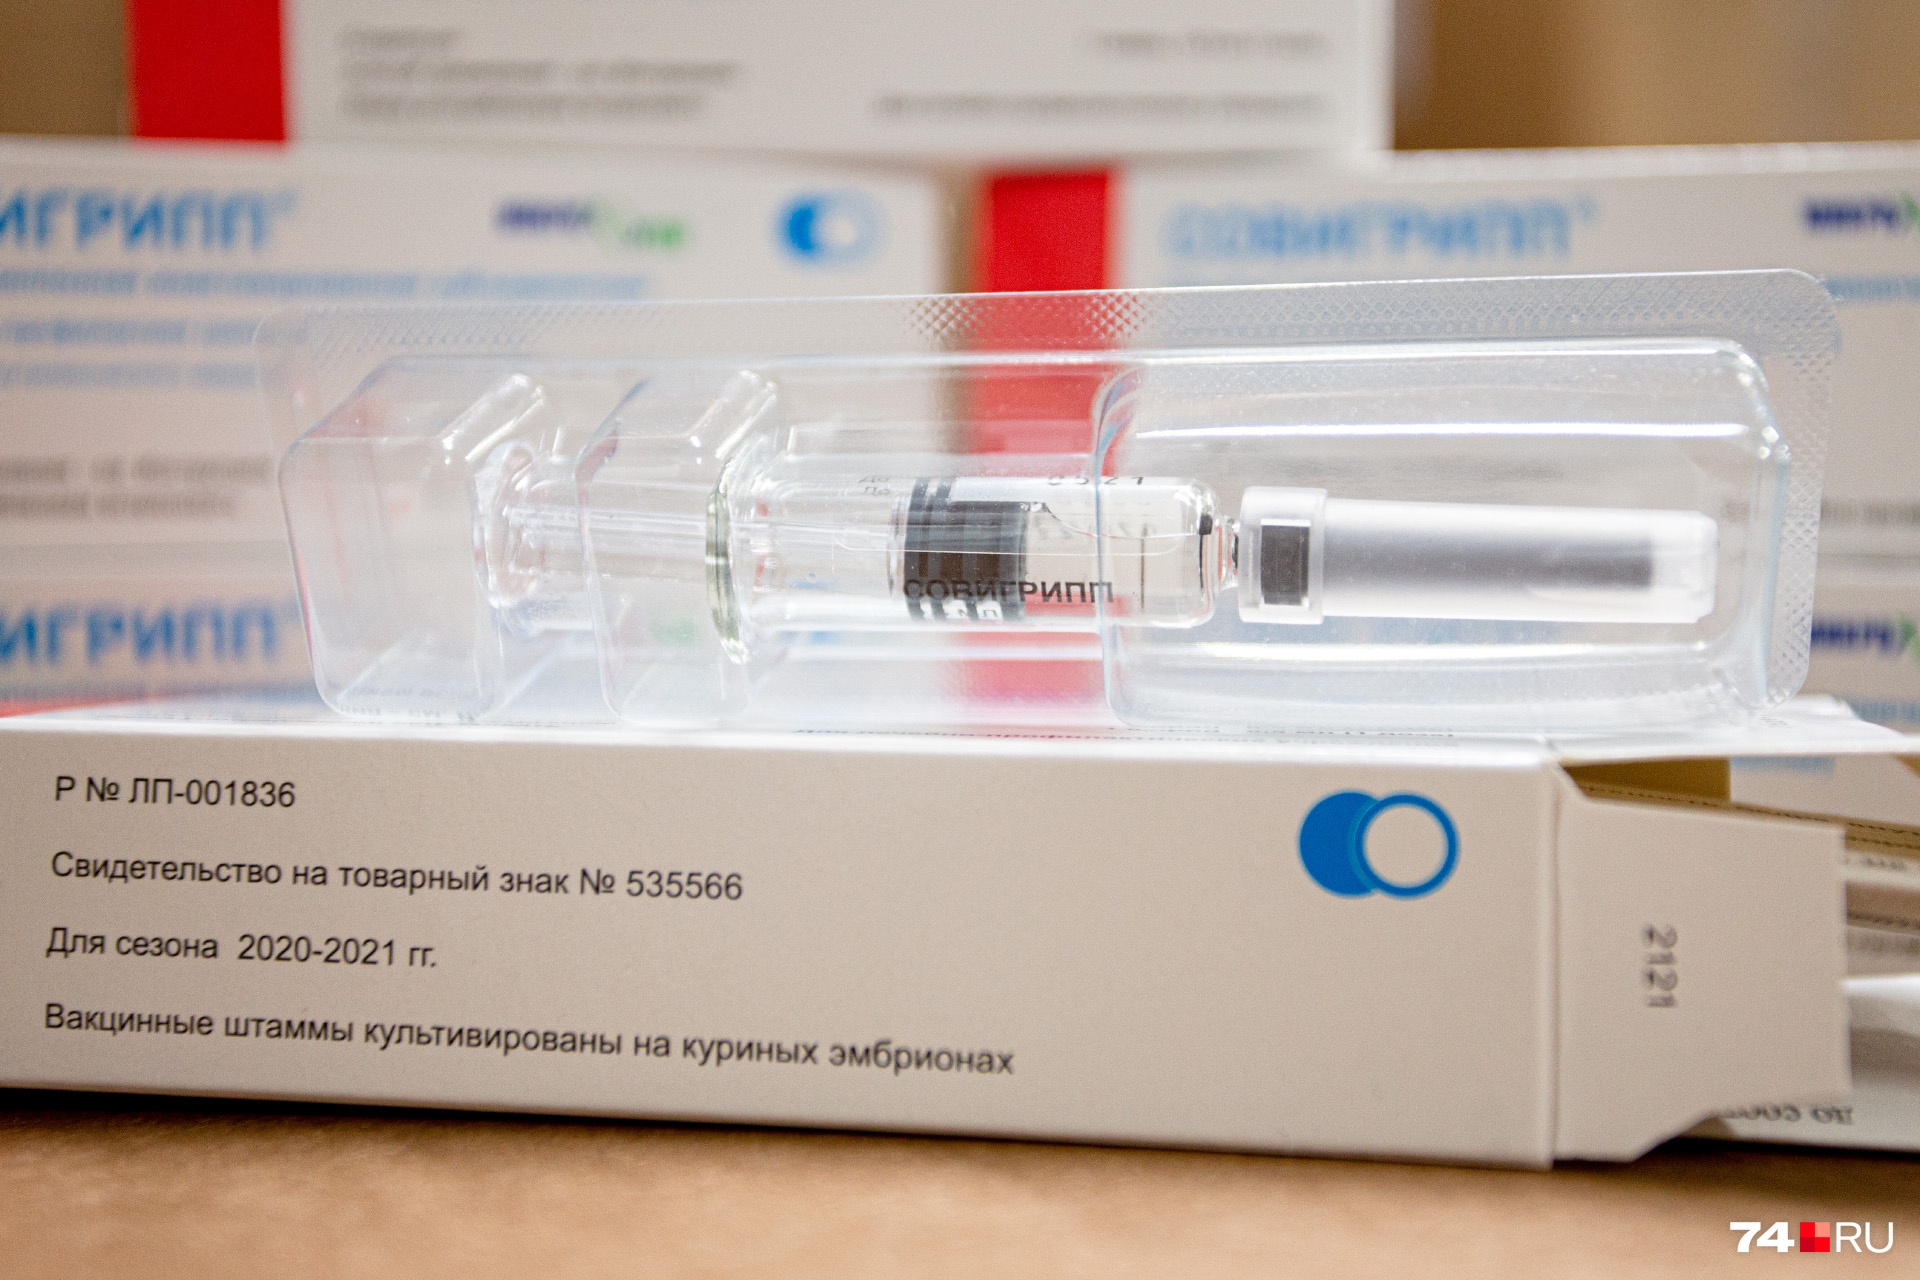 Вакцина 24. Пневмо 24 вакцина. Прививка от гриппа в Московской области 2021 название вакцины.